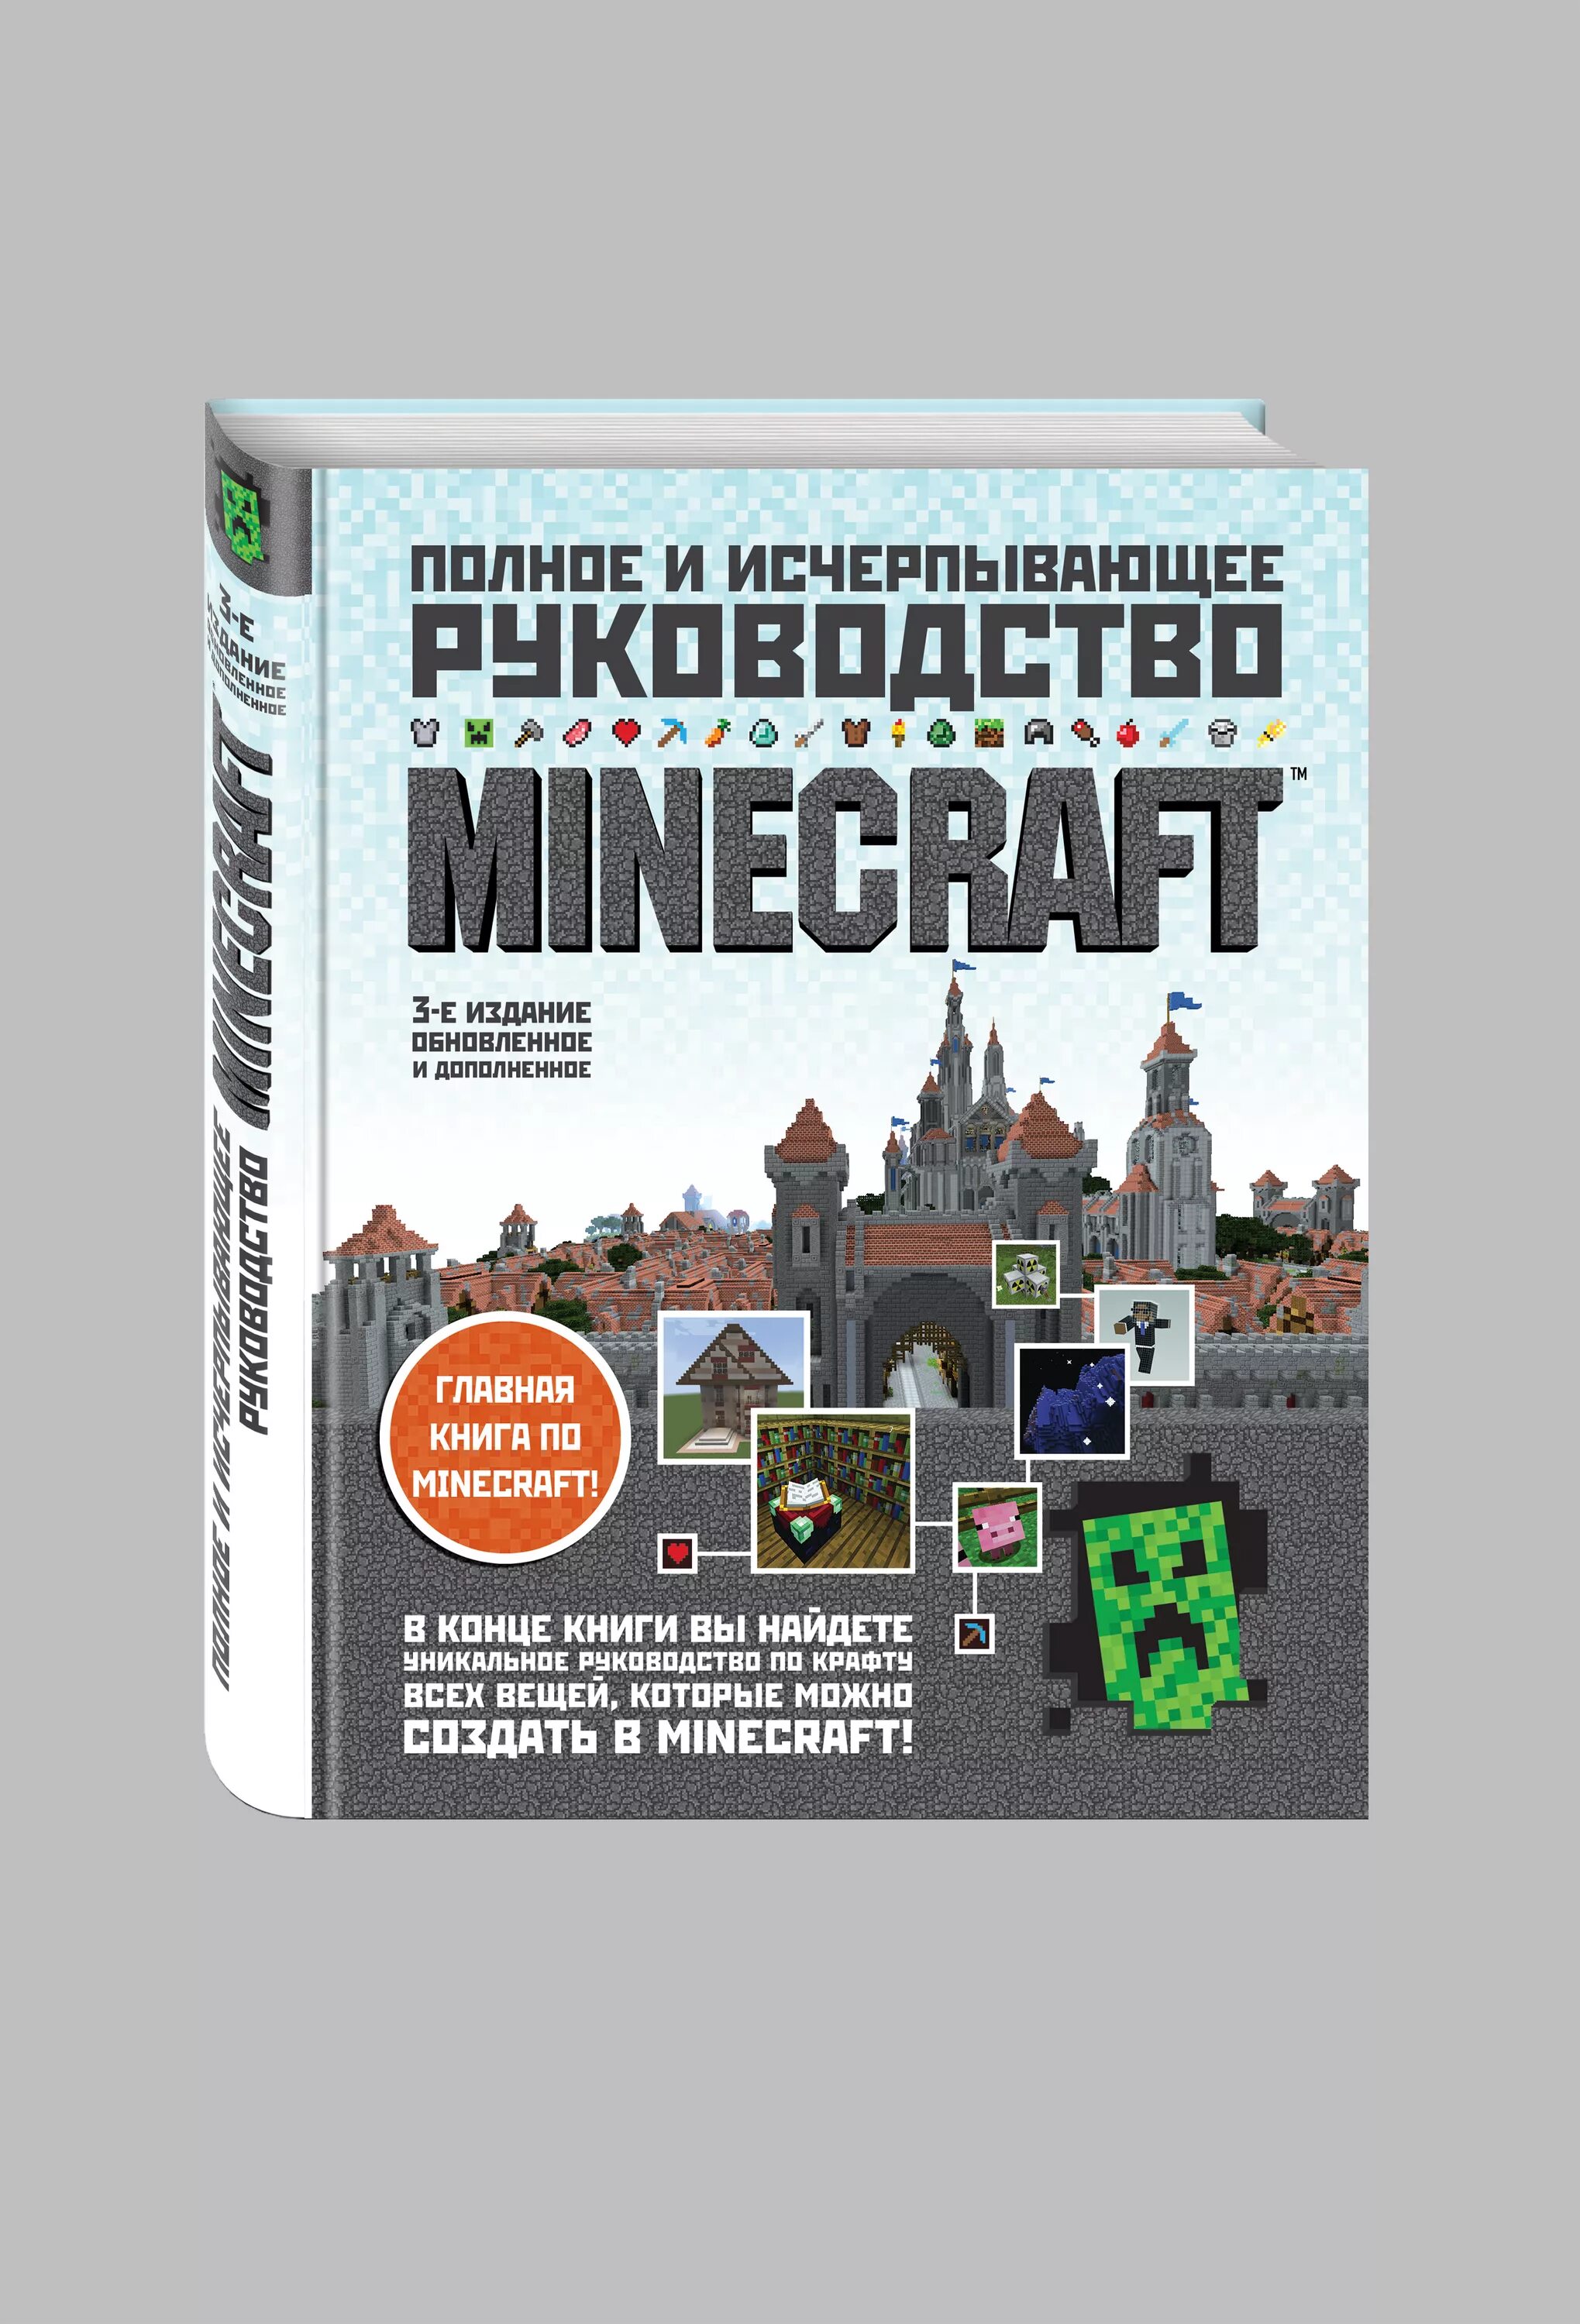 Продолжай книгу майнкрафт. Minecraft книга руководство. Полное и исчерпывающее руководство Minecraft 1 издание. Полное руководство по майнкрафту. Все книги по майнкрафту.